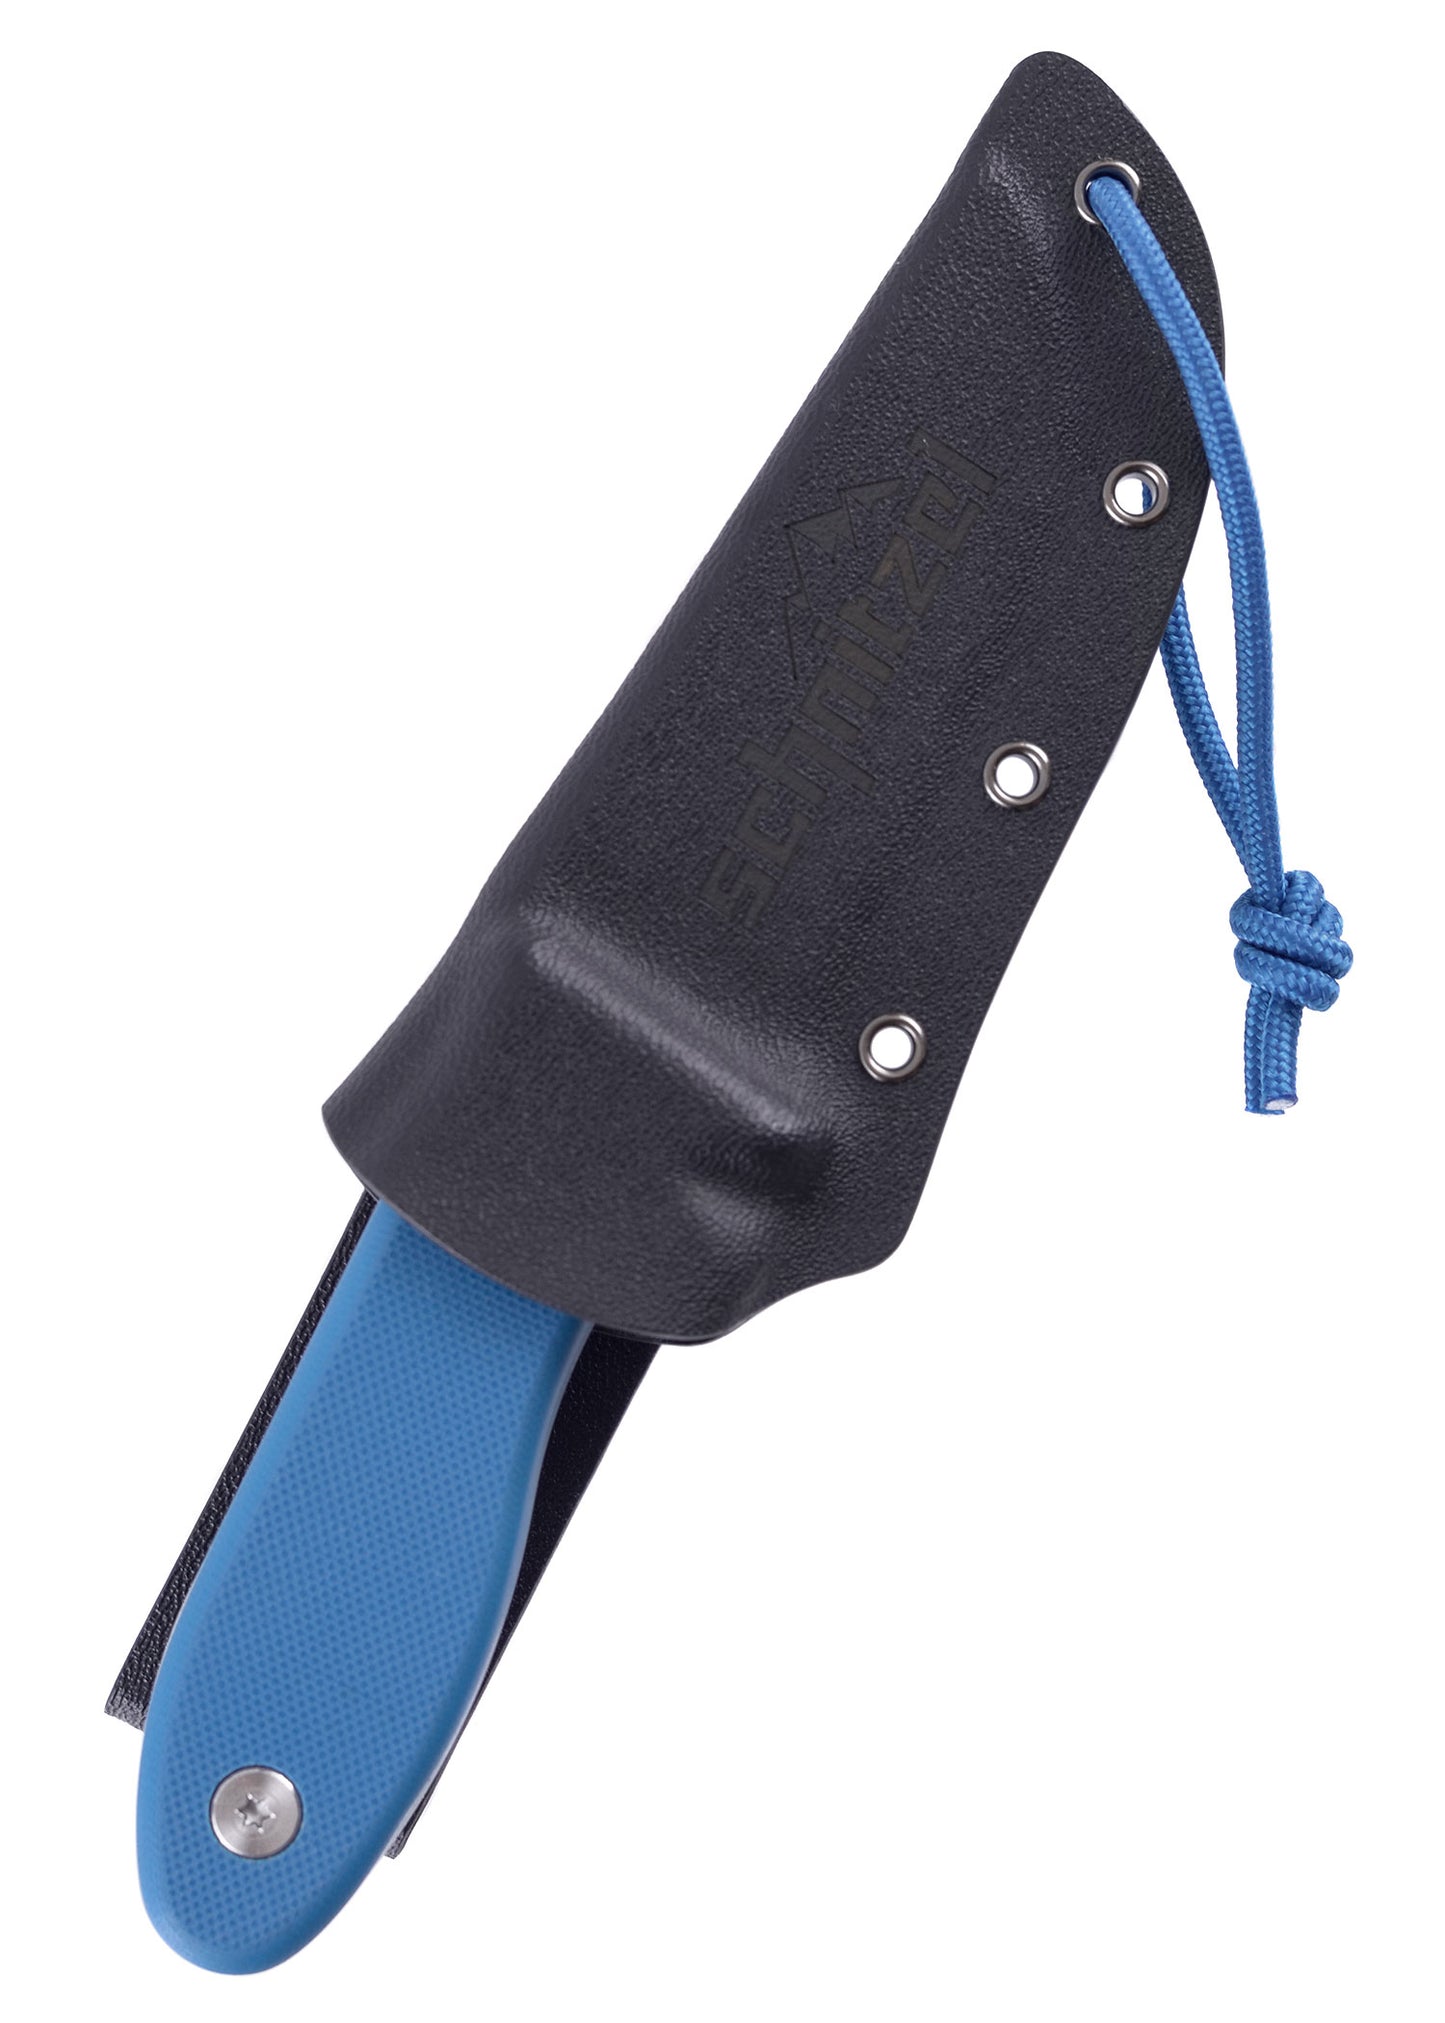 Das UNU Kinder Schnitzmesser der Firma Schnitzel mit blauem Griff in seiner Scheide mit Öffnungskordel